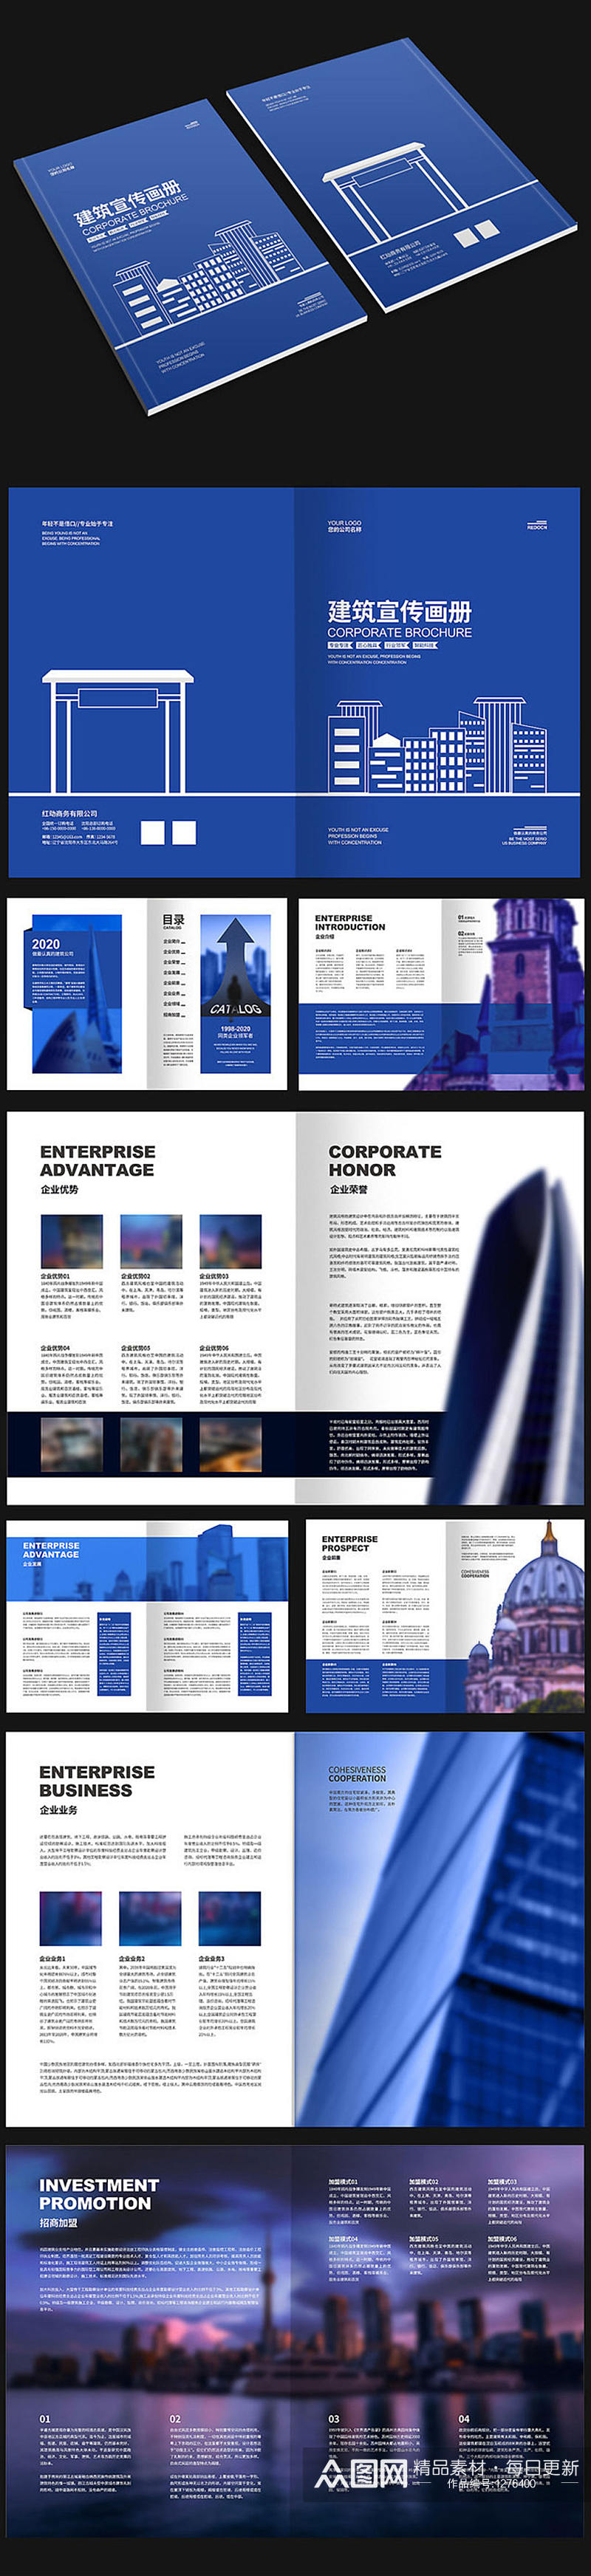 蓝色建筑商务画册素材